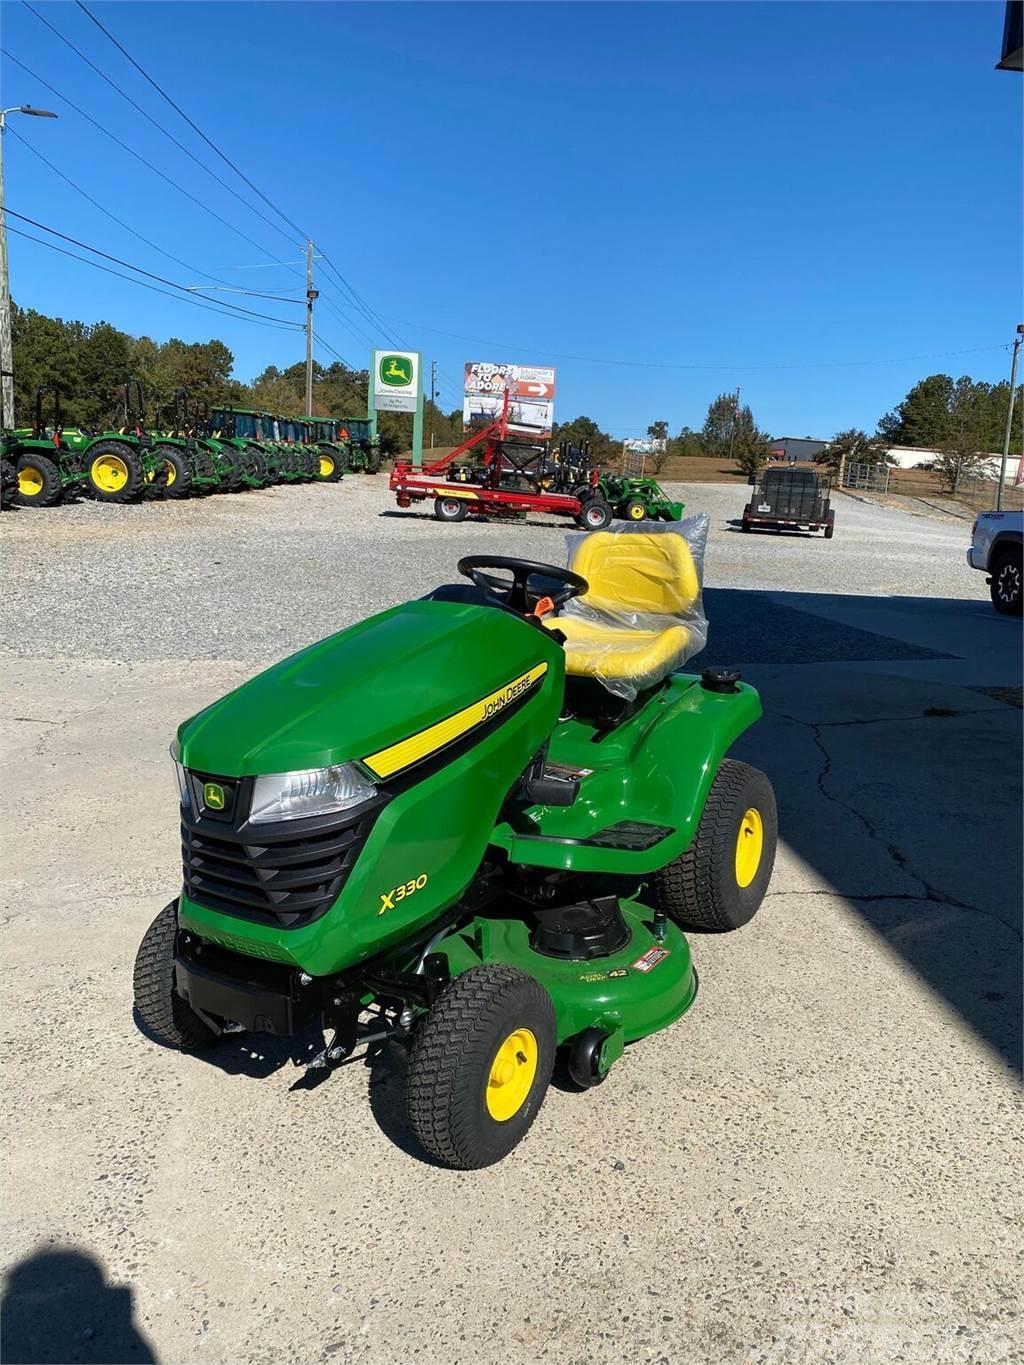 John Deere X330 Micro tracteur